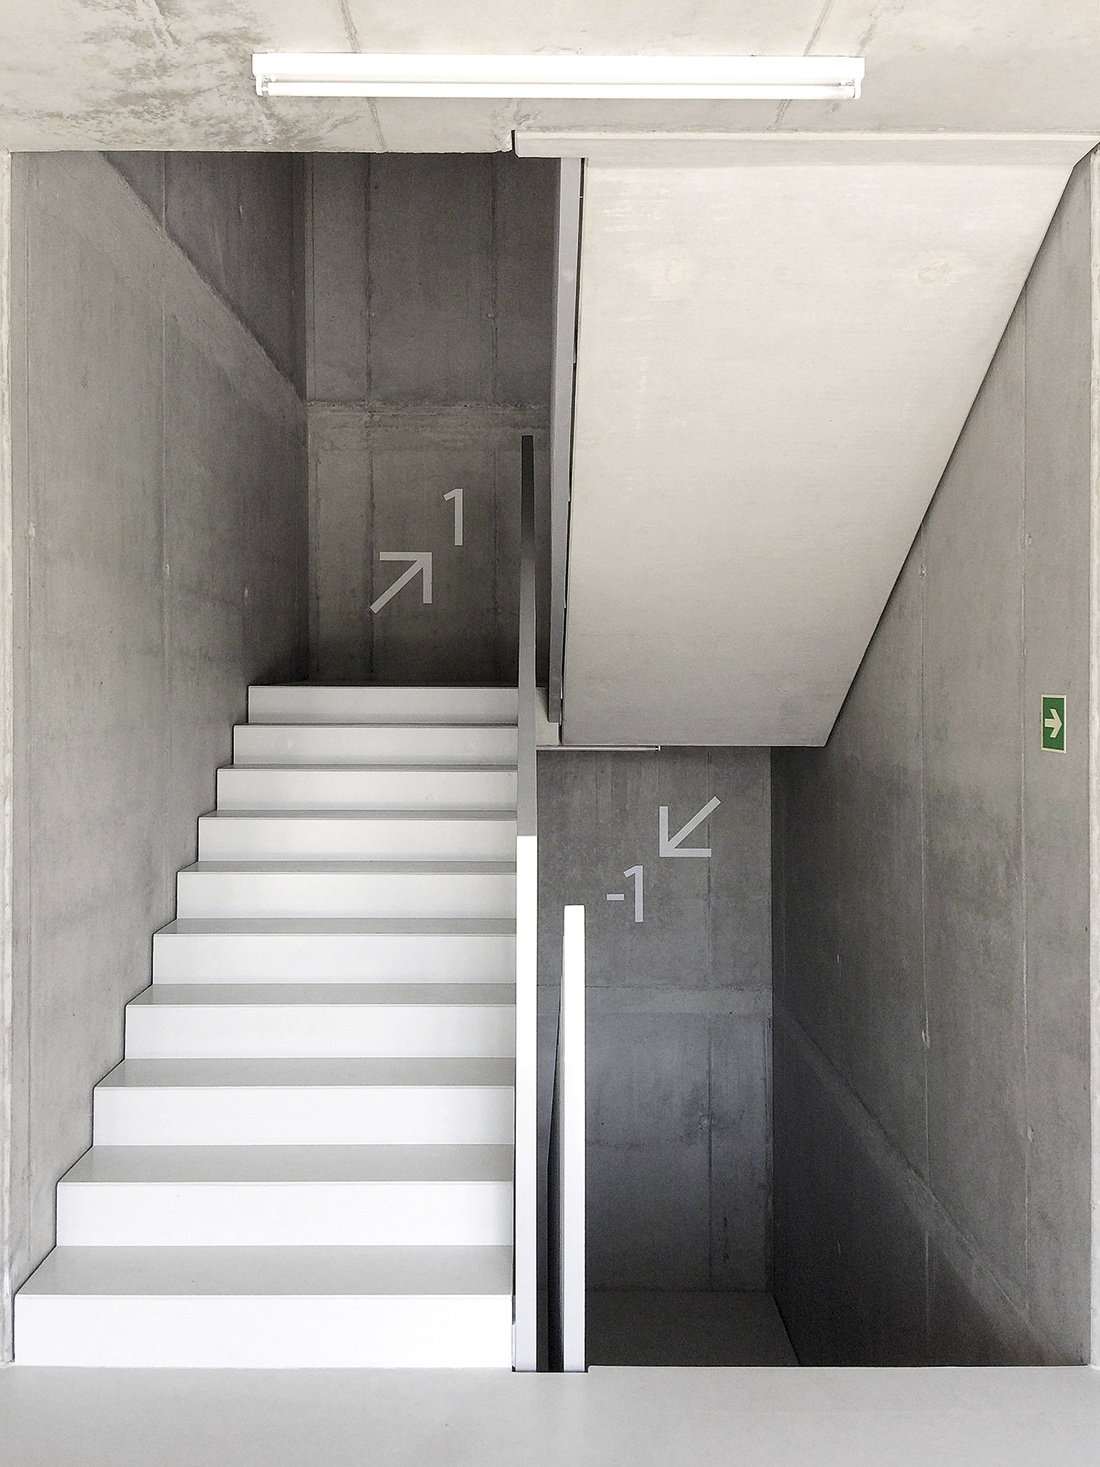 Budynek biurowy w Katowicach – przestrzenie wewnętrzne zostały wykonane w surowym betonie